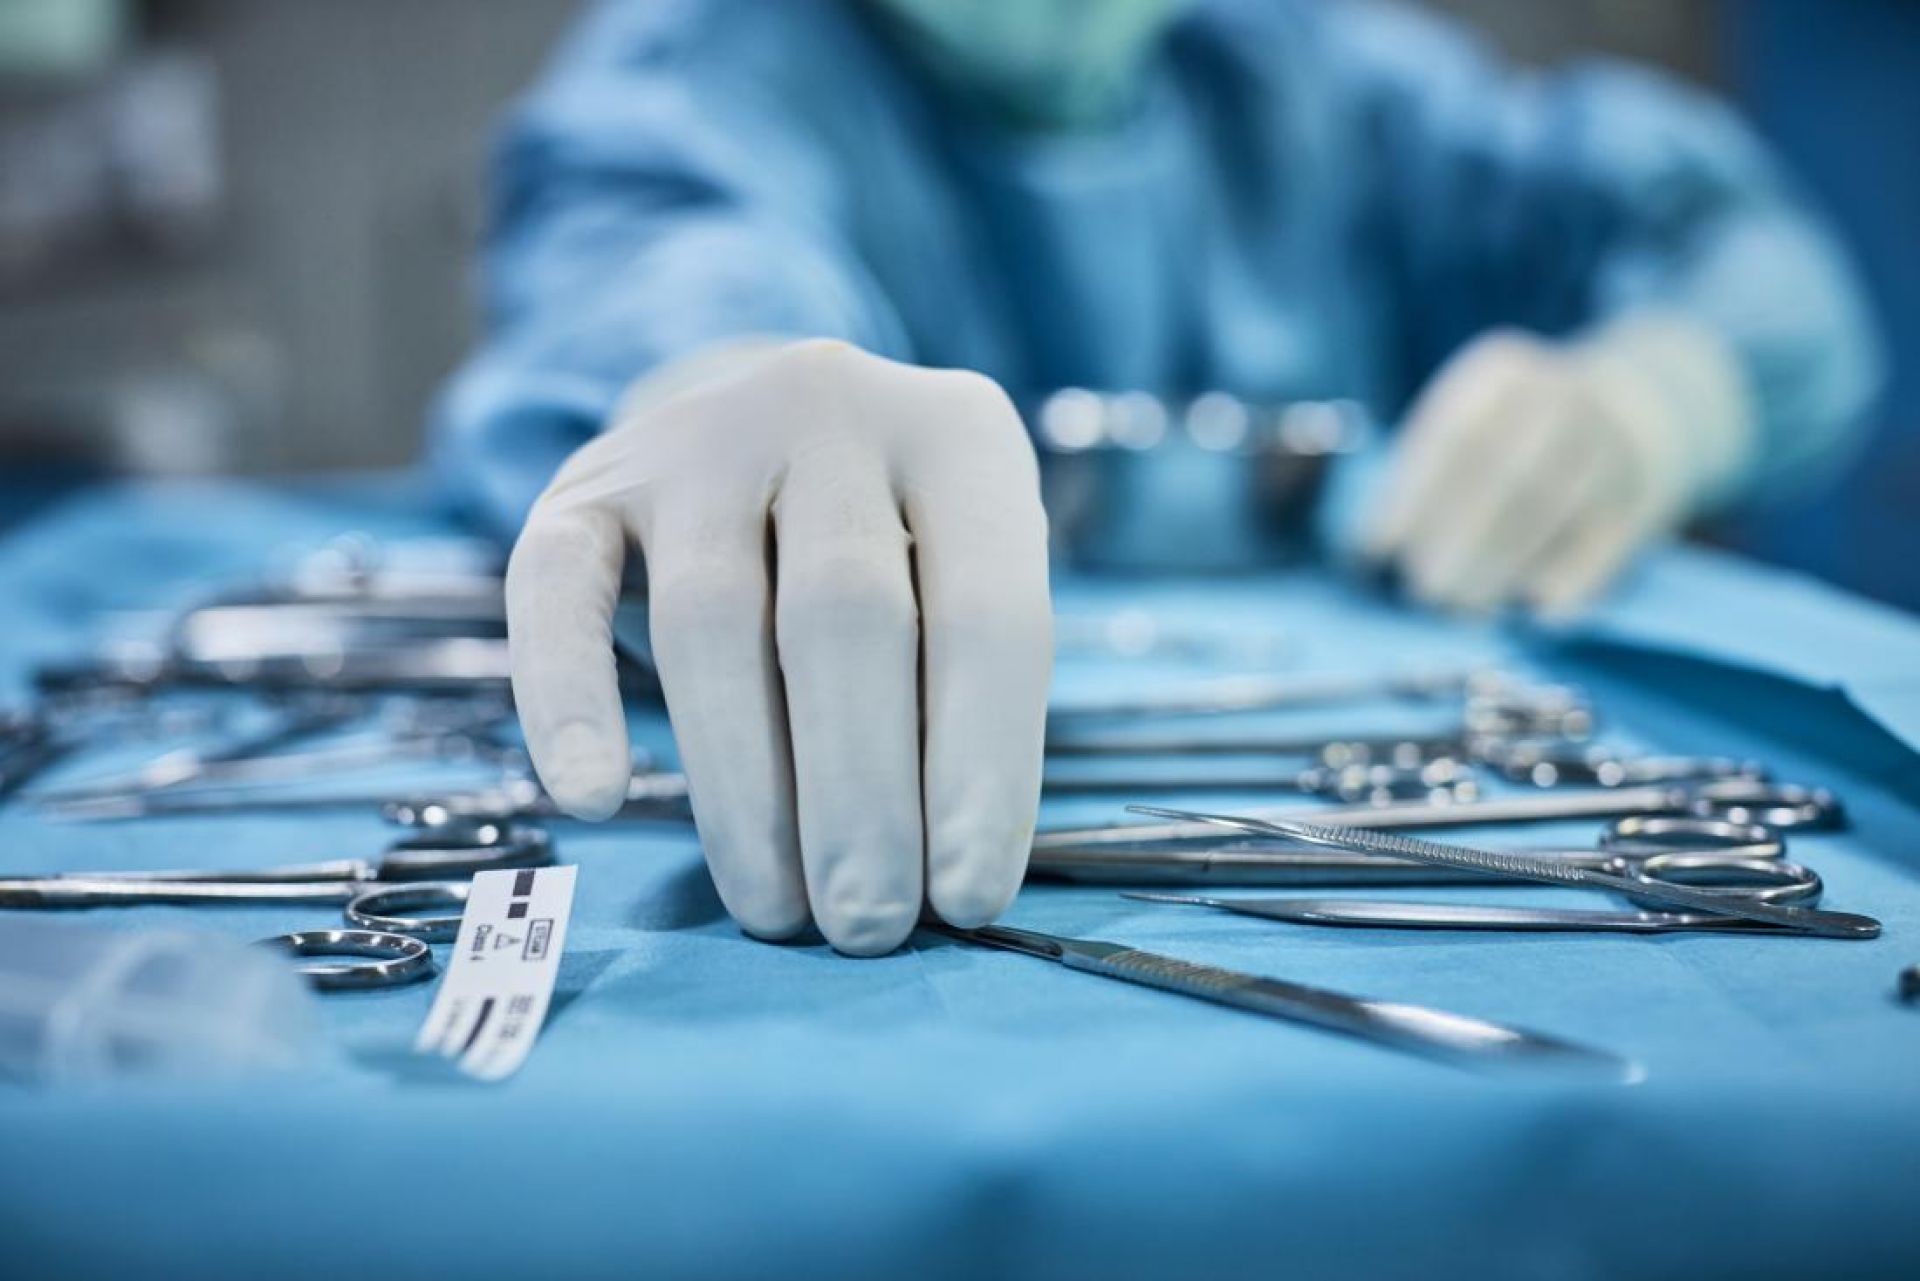 Περιτονίτιδα: Μια επείγουσα κατάσταση που απαιτεί άμεσα χειρουργείο